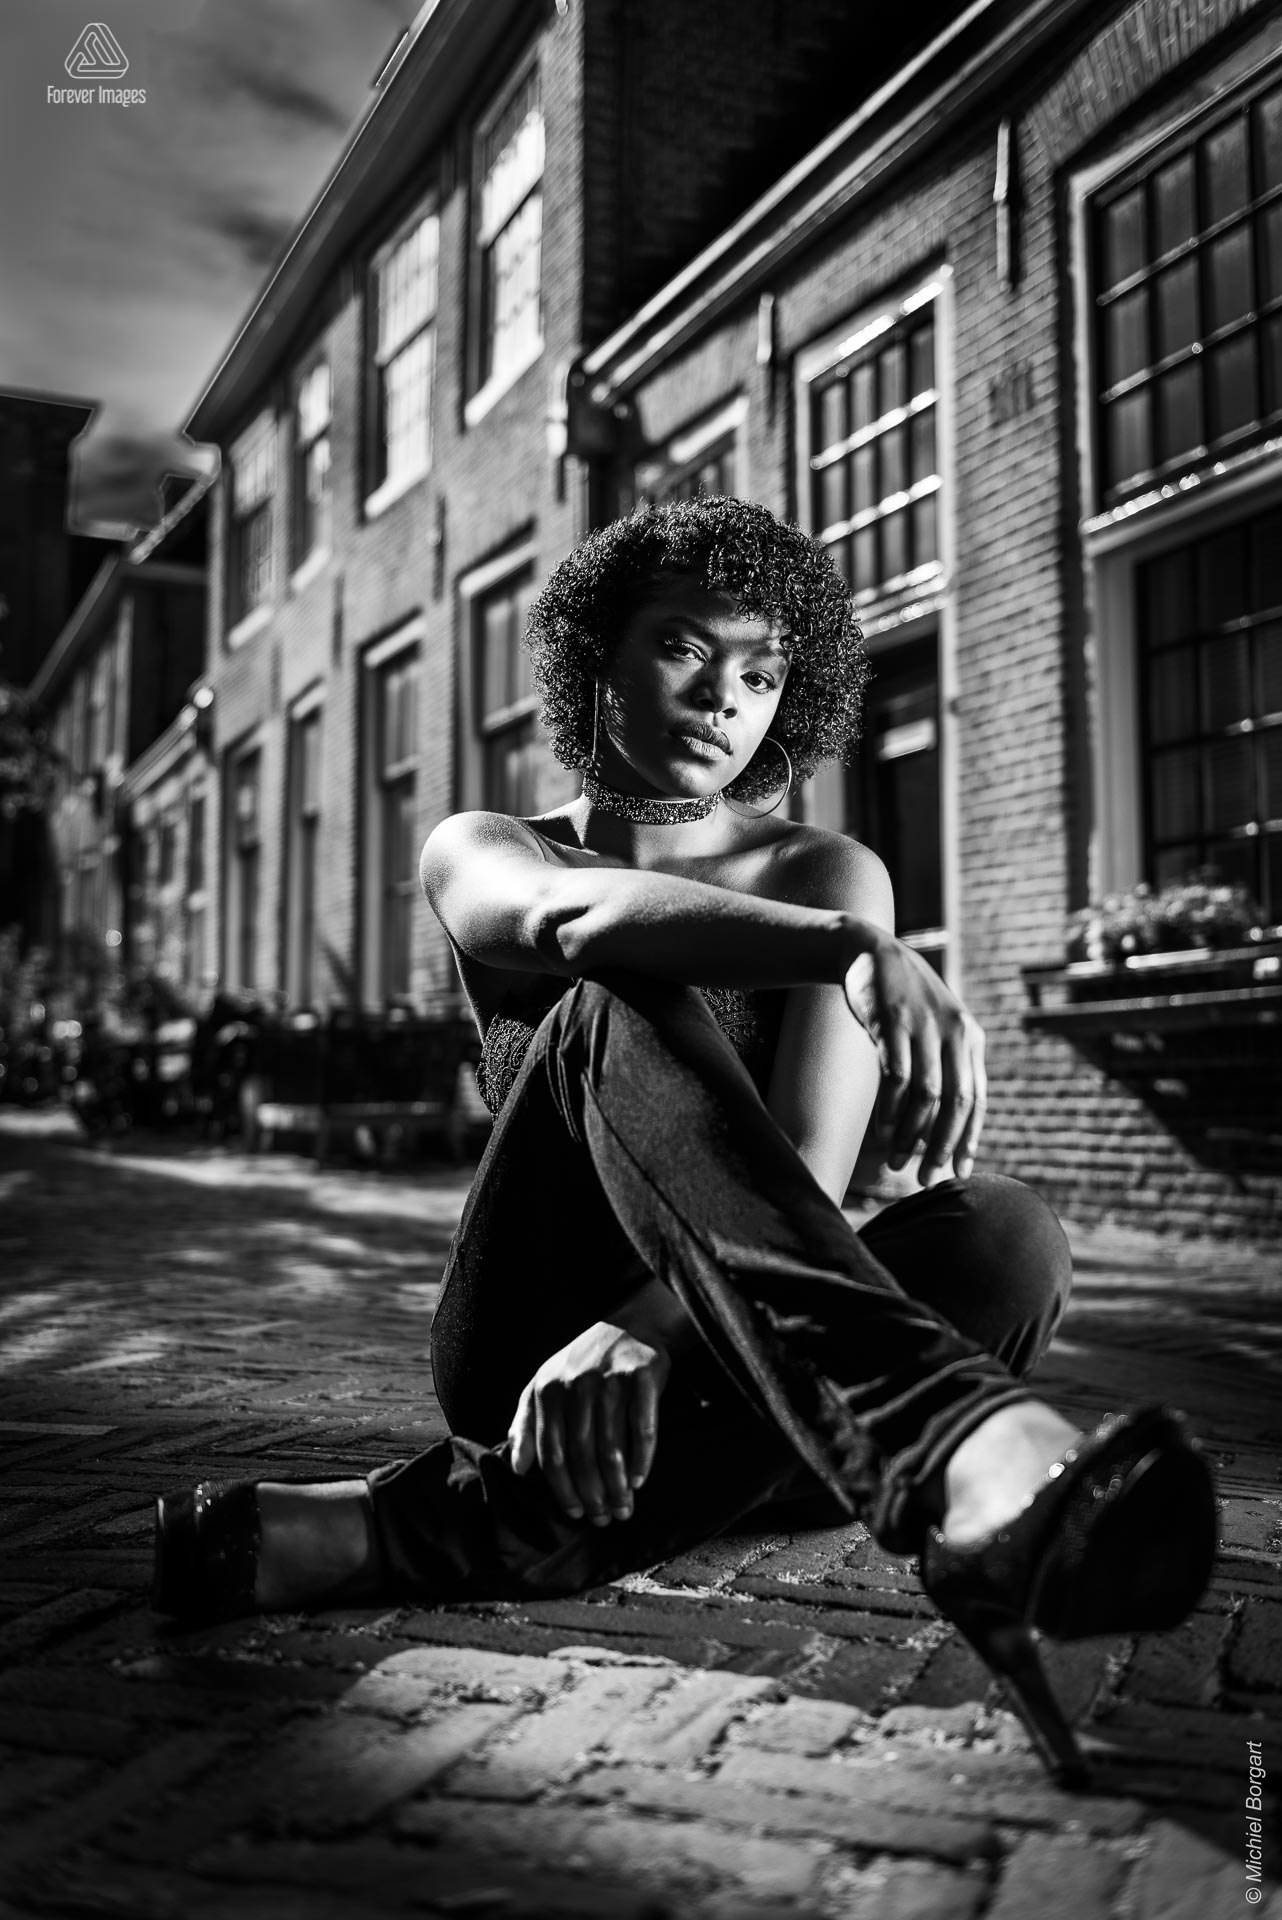 Portretfoto zwart-wit op straat zittend | Mariangel Dolorita Haarlem | Portretfotograaf Michiel Borgart - Forever Images.